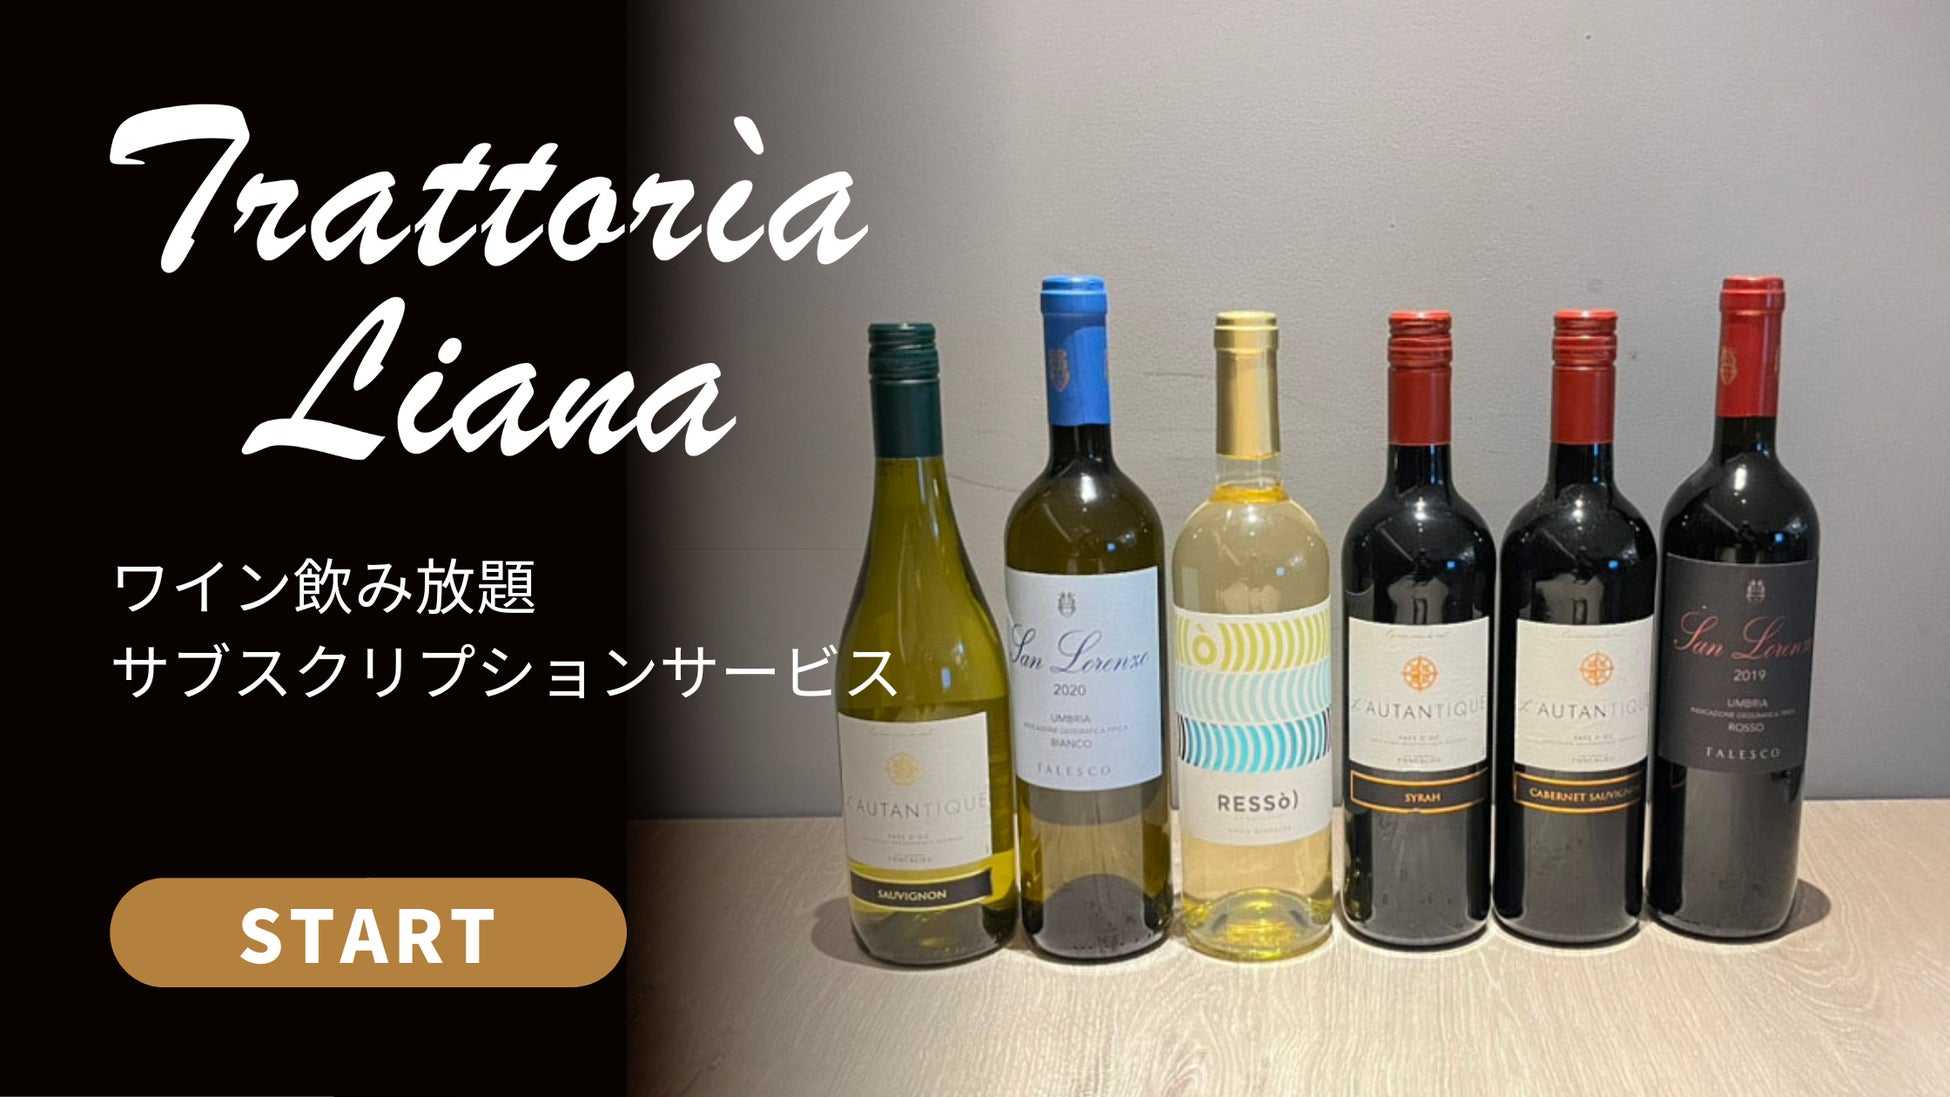 【トラットリア リアナ 名古屋】1回2時間制ワイン飲み放題サブスクリプションサービスがスタートのサブ画像1